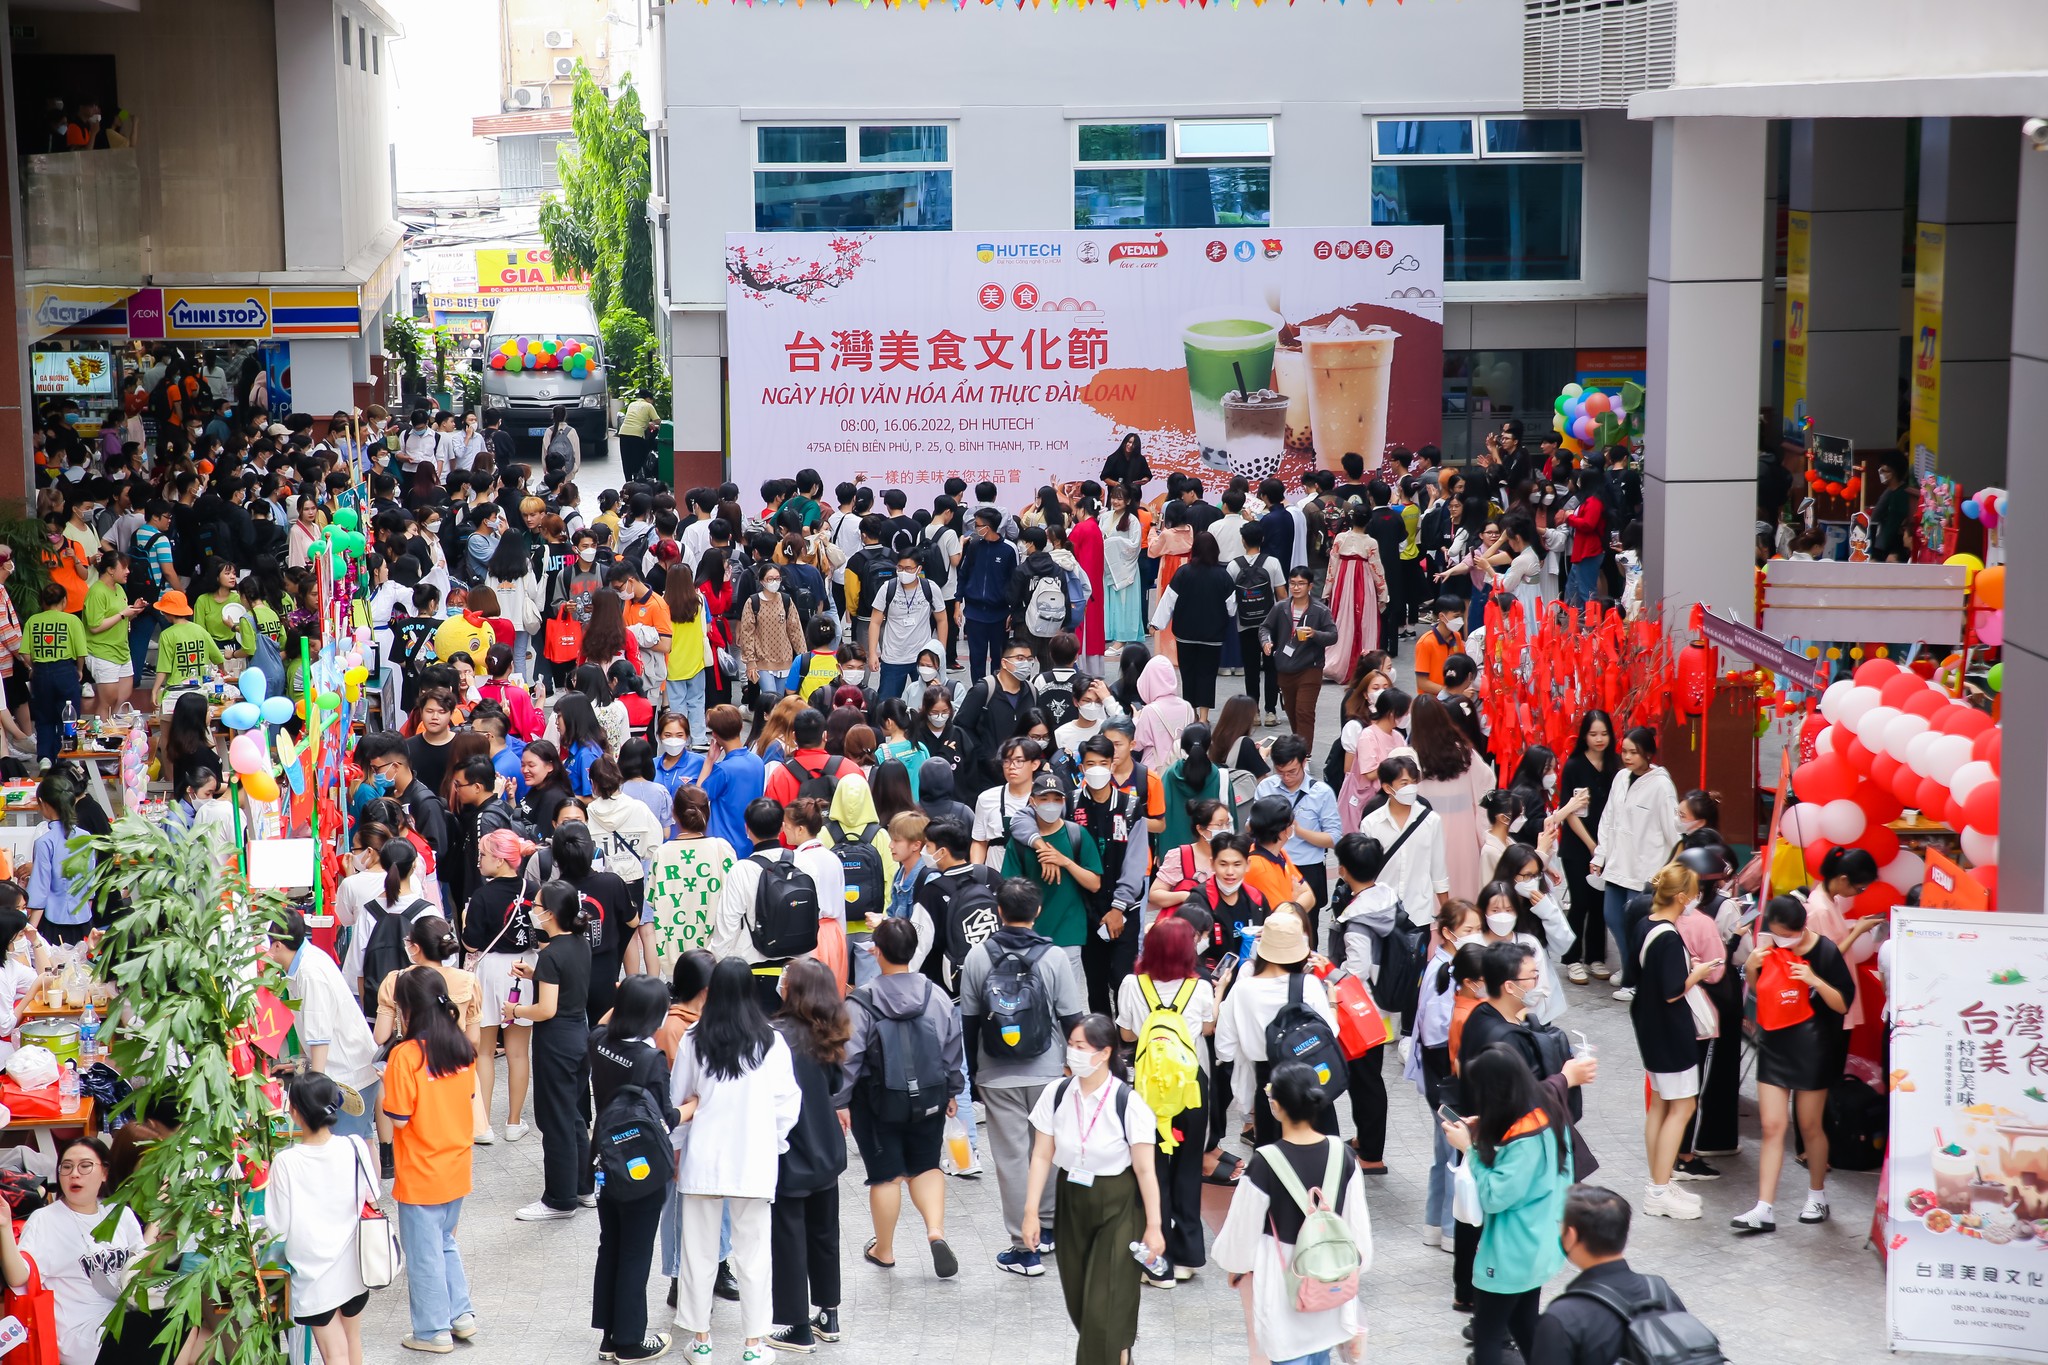 Sức hút từ sự kiện “Ngày hội văn hóa ẩm thực Đài Loan” do Khoa Trung Quốc Học tổ chức 39